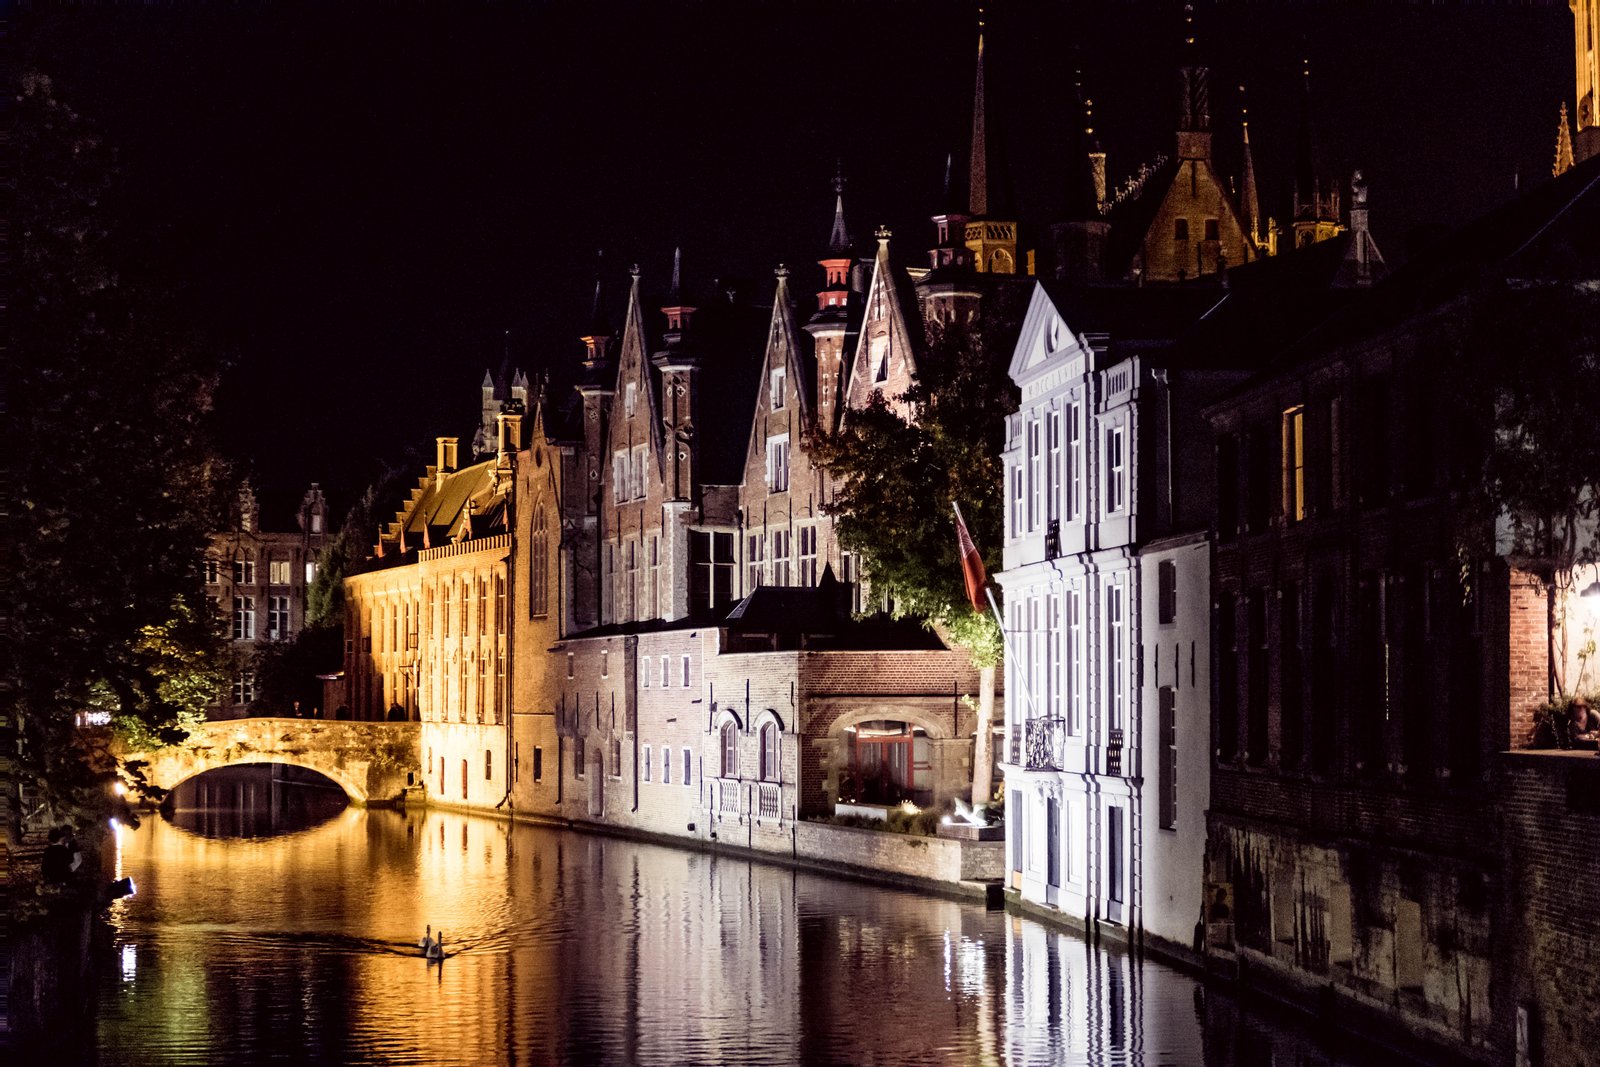 Bruges Belgium at night